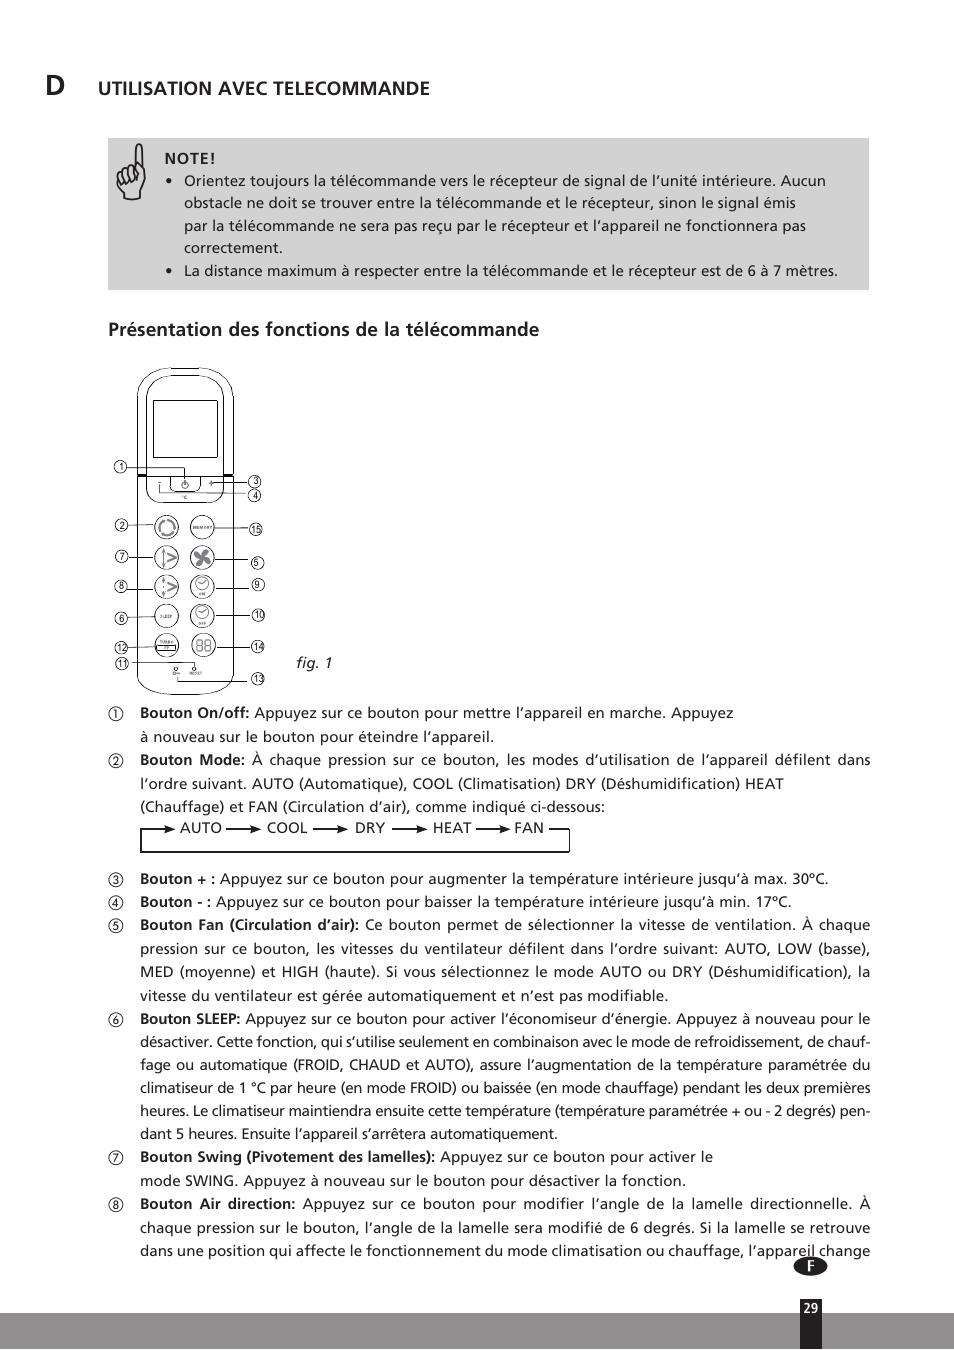 Utilisation avec telecommande, Présentation des fonctions de la télécommande  | Qlima SC3331 in User Manual | Page 29 / 176